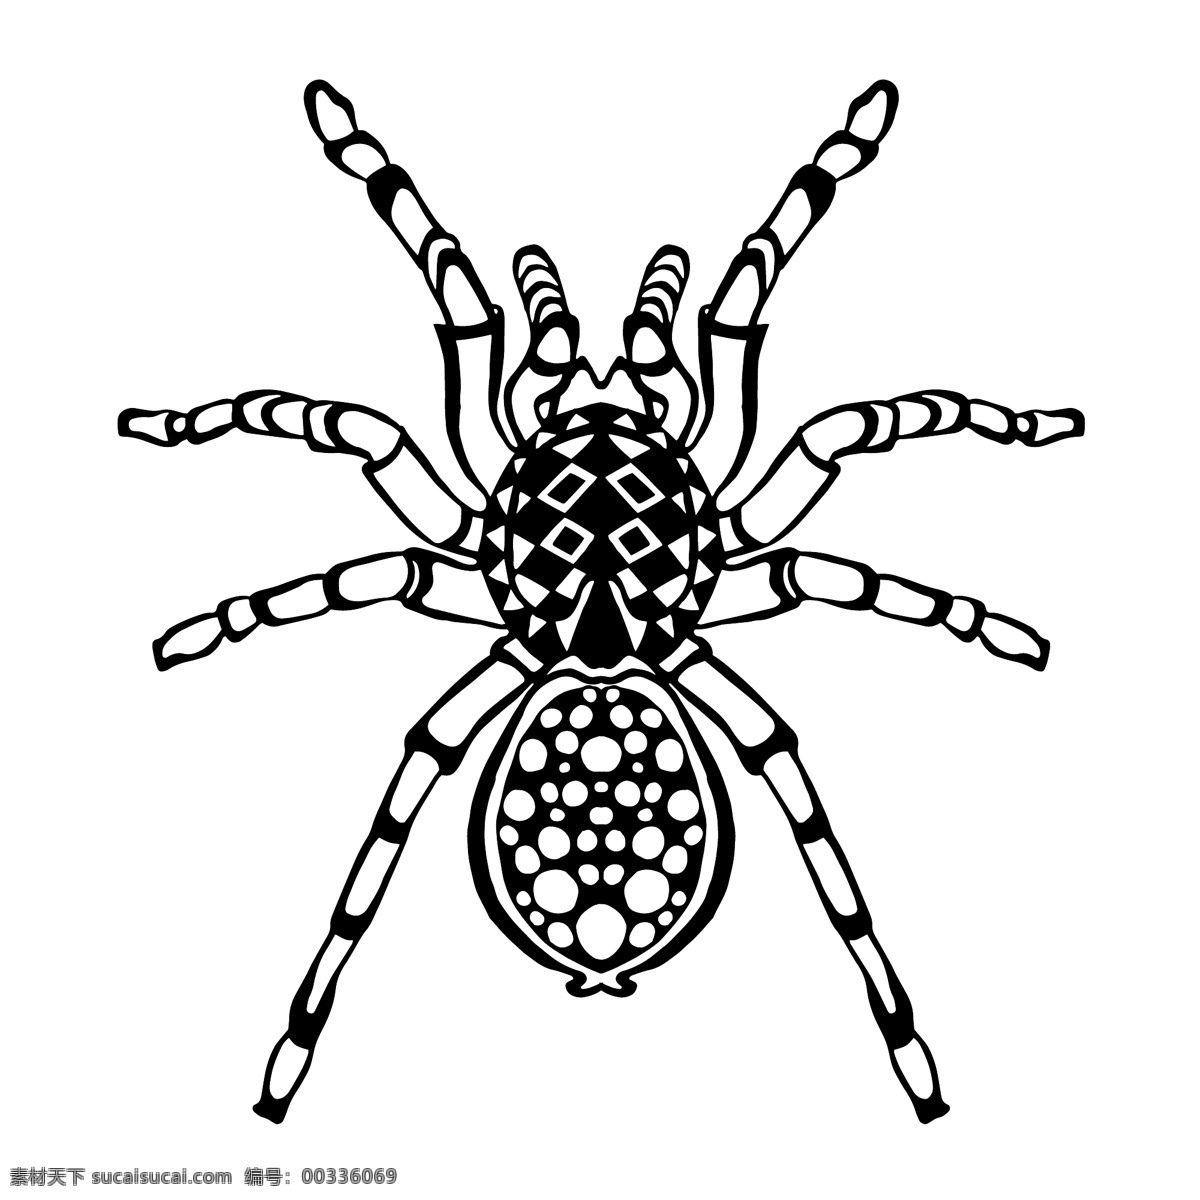 黑白 艺术 蜘蛛 图案 昆虫 动物 手绘